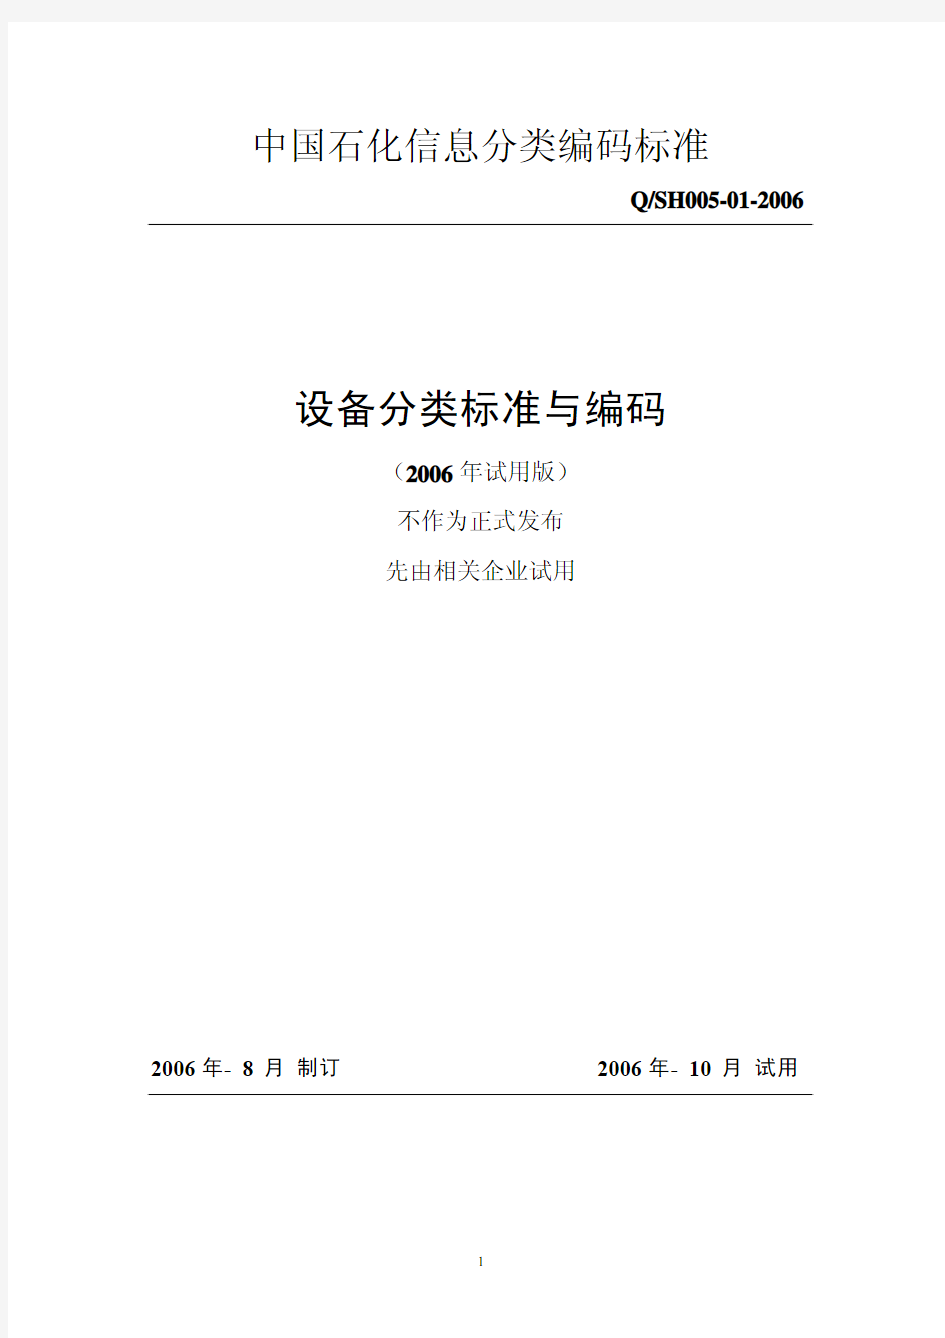 中国石化信息分类编码标准-设备分类标准与编码